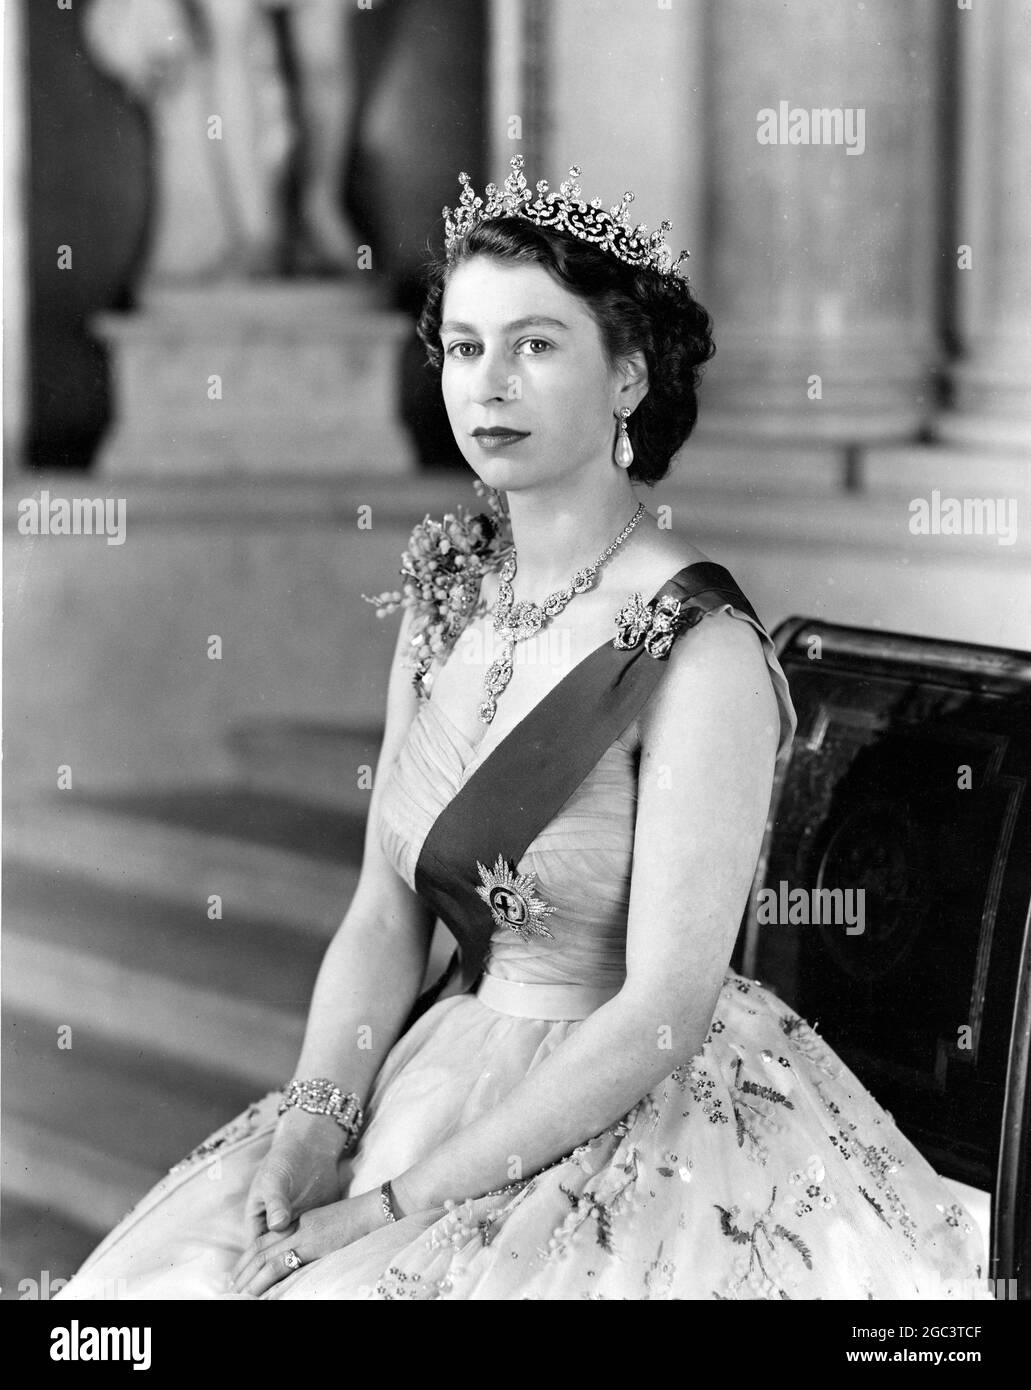 La Reine est vue dans une robe de soirée de tulle jaune ornée de jets de mimosa et de la broderie de paaillette d'or; elle porte le ruban bleu et l'étoile de la jarretière. Voici quelques détails des diamants de sa Majesté présentés dans le portrait: Le collier est un cadeau de mariage de Nizam de Hyderabad; le tiara, également un cadeau de mariage, de la reine Marie. La broche d'arc, les pendants d'oreilles, le bracelet et la montre de poignet en platine sont également en diamants. L'étude de portrait a été prise sur le petit escalier de la Grande entrée à Buckingham Palace. 26 janvier 1954 Banque D'Images